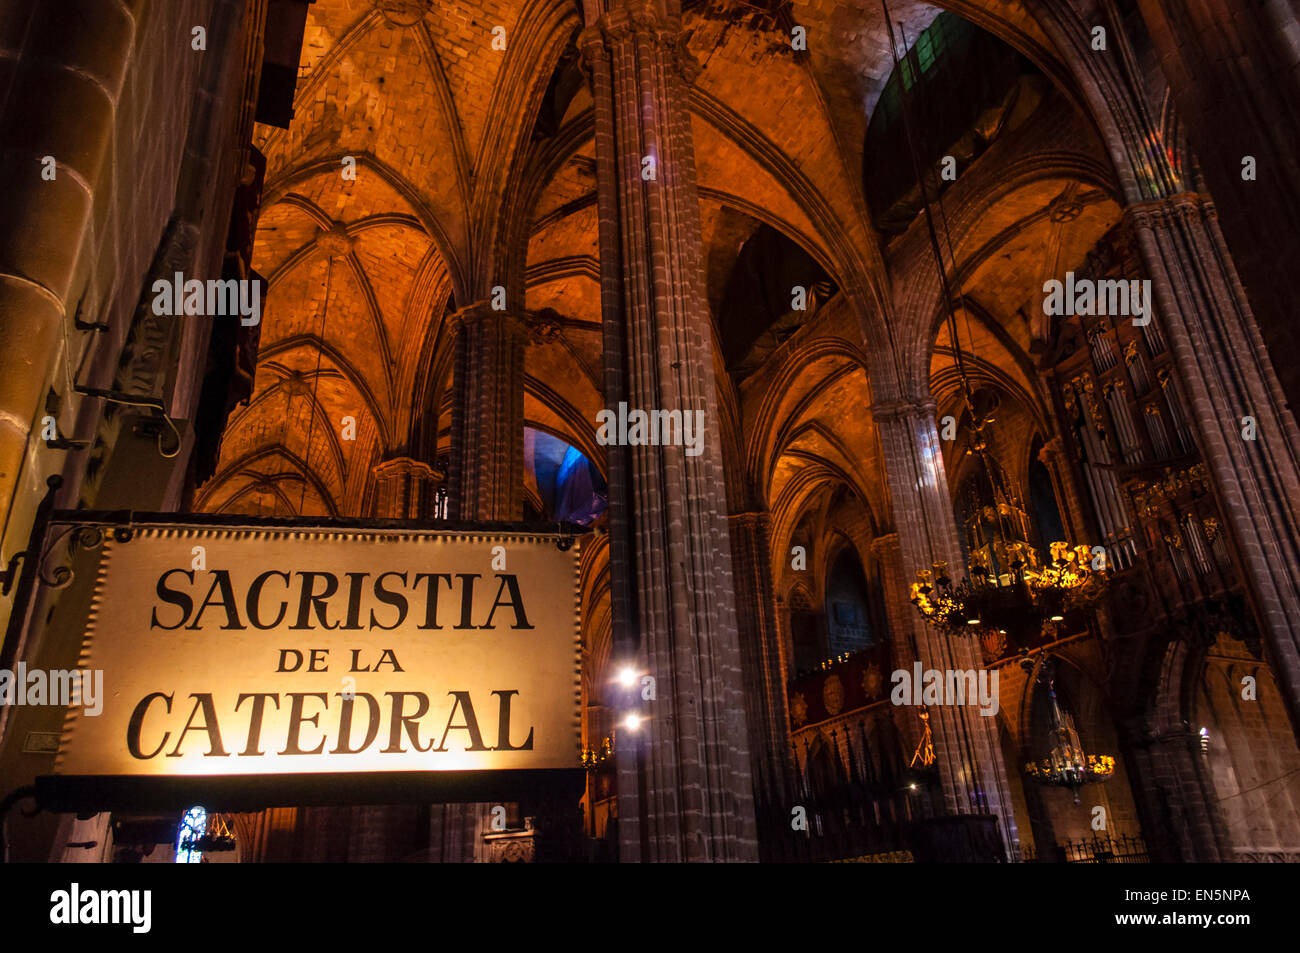 Catedral de la Santa Cruz y Santa Eulalia de Barcelona, Barcelona's cathedral, Catedral de Barcelona, Arzobispado de Barcelona, Catalonia, Spain Stock Photo